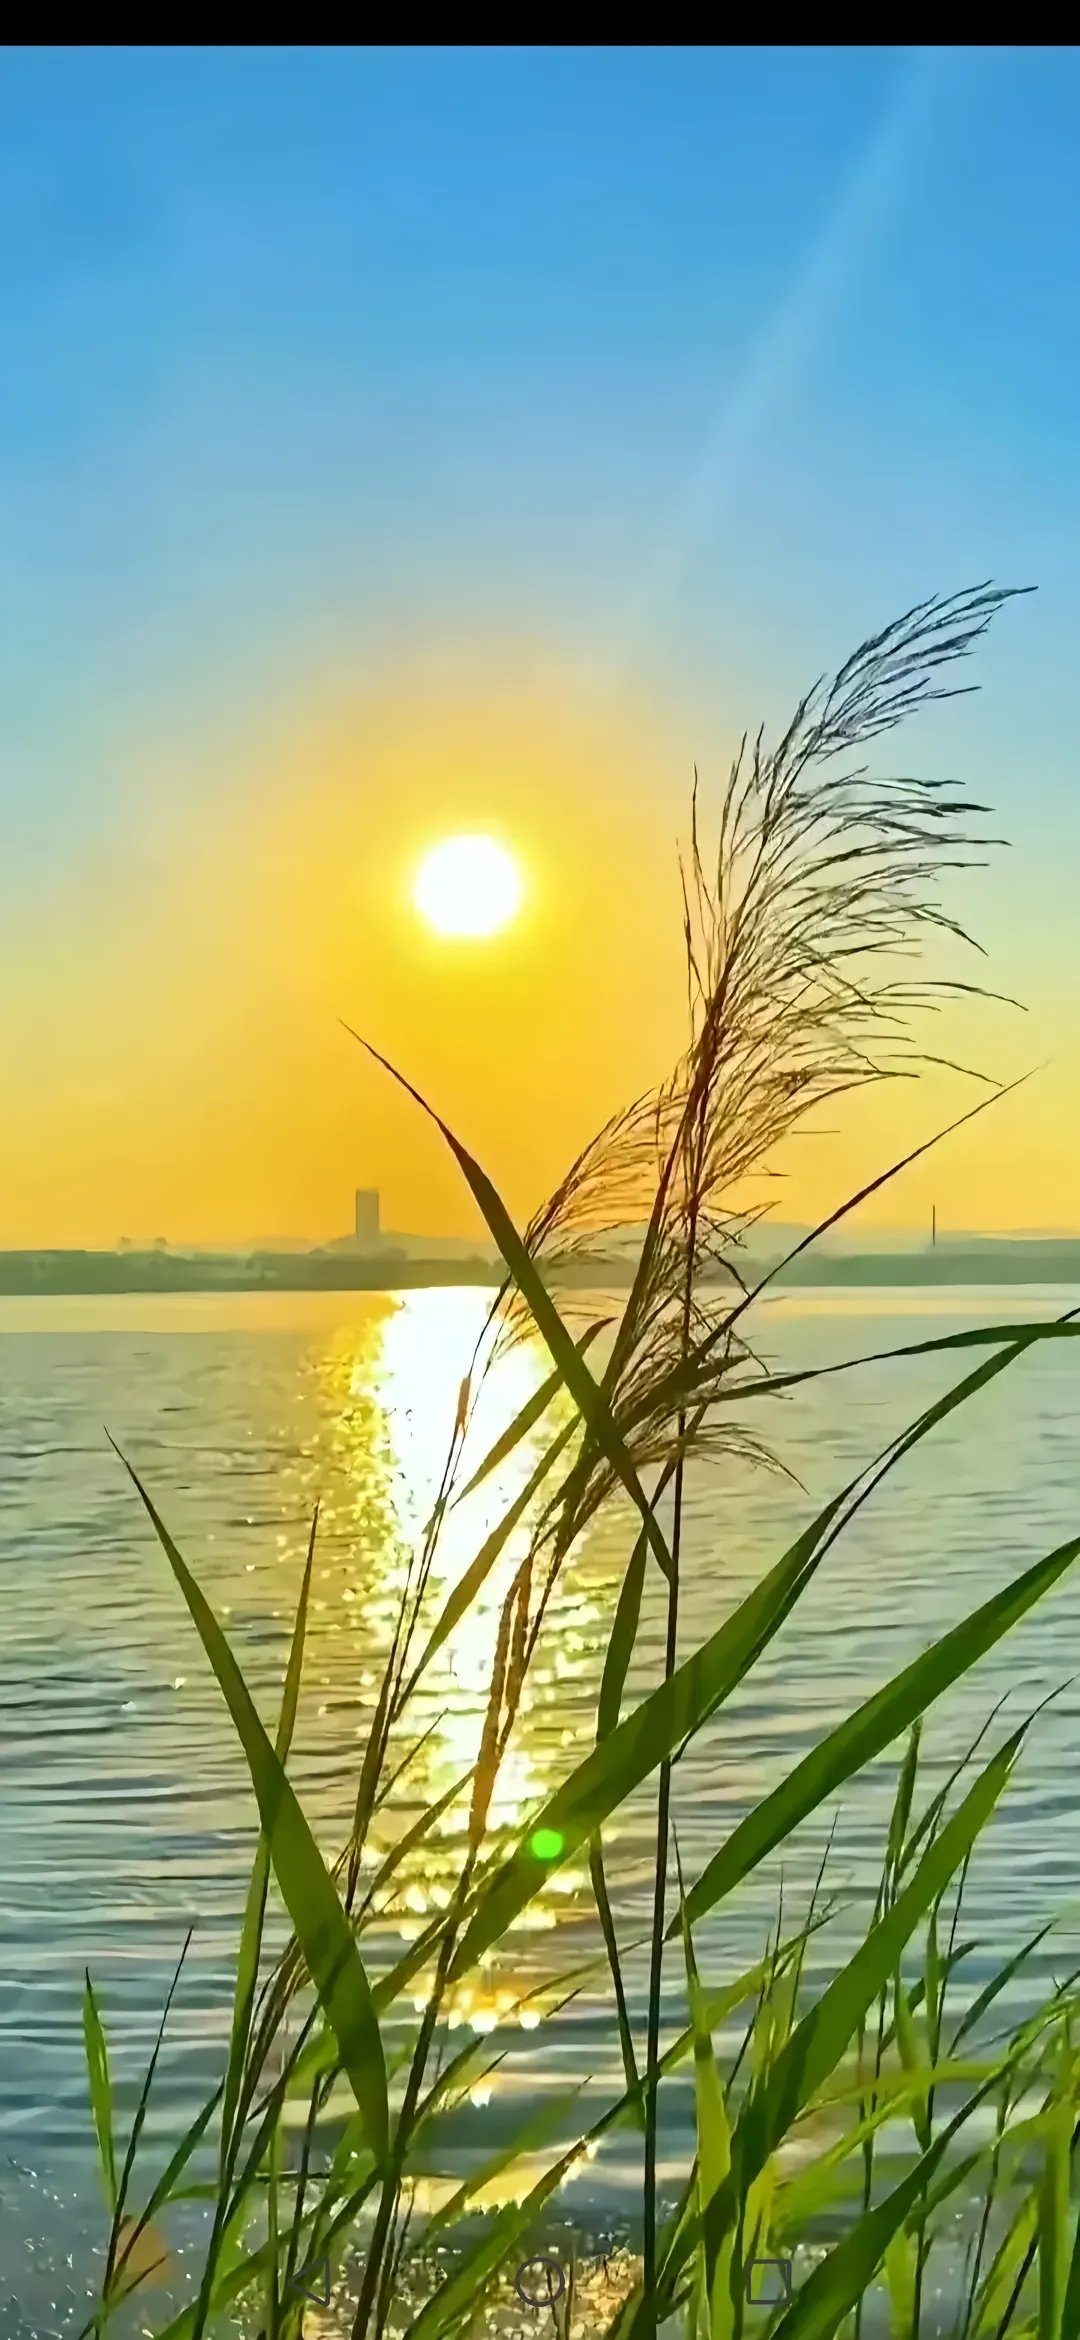 配图:夕阳下的湖面美景,水面反射出美丽的光芒,芦苇在风中摇曳